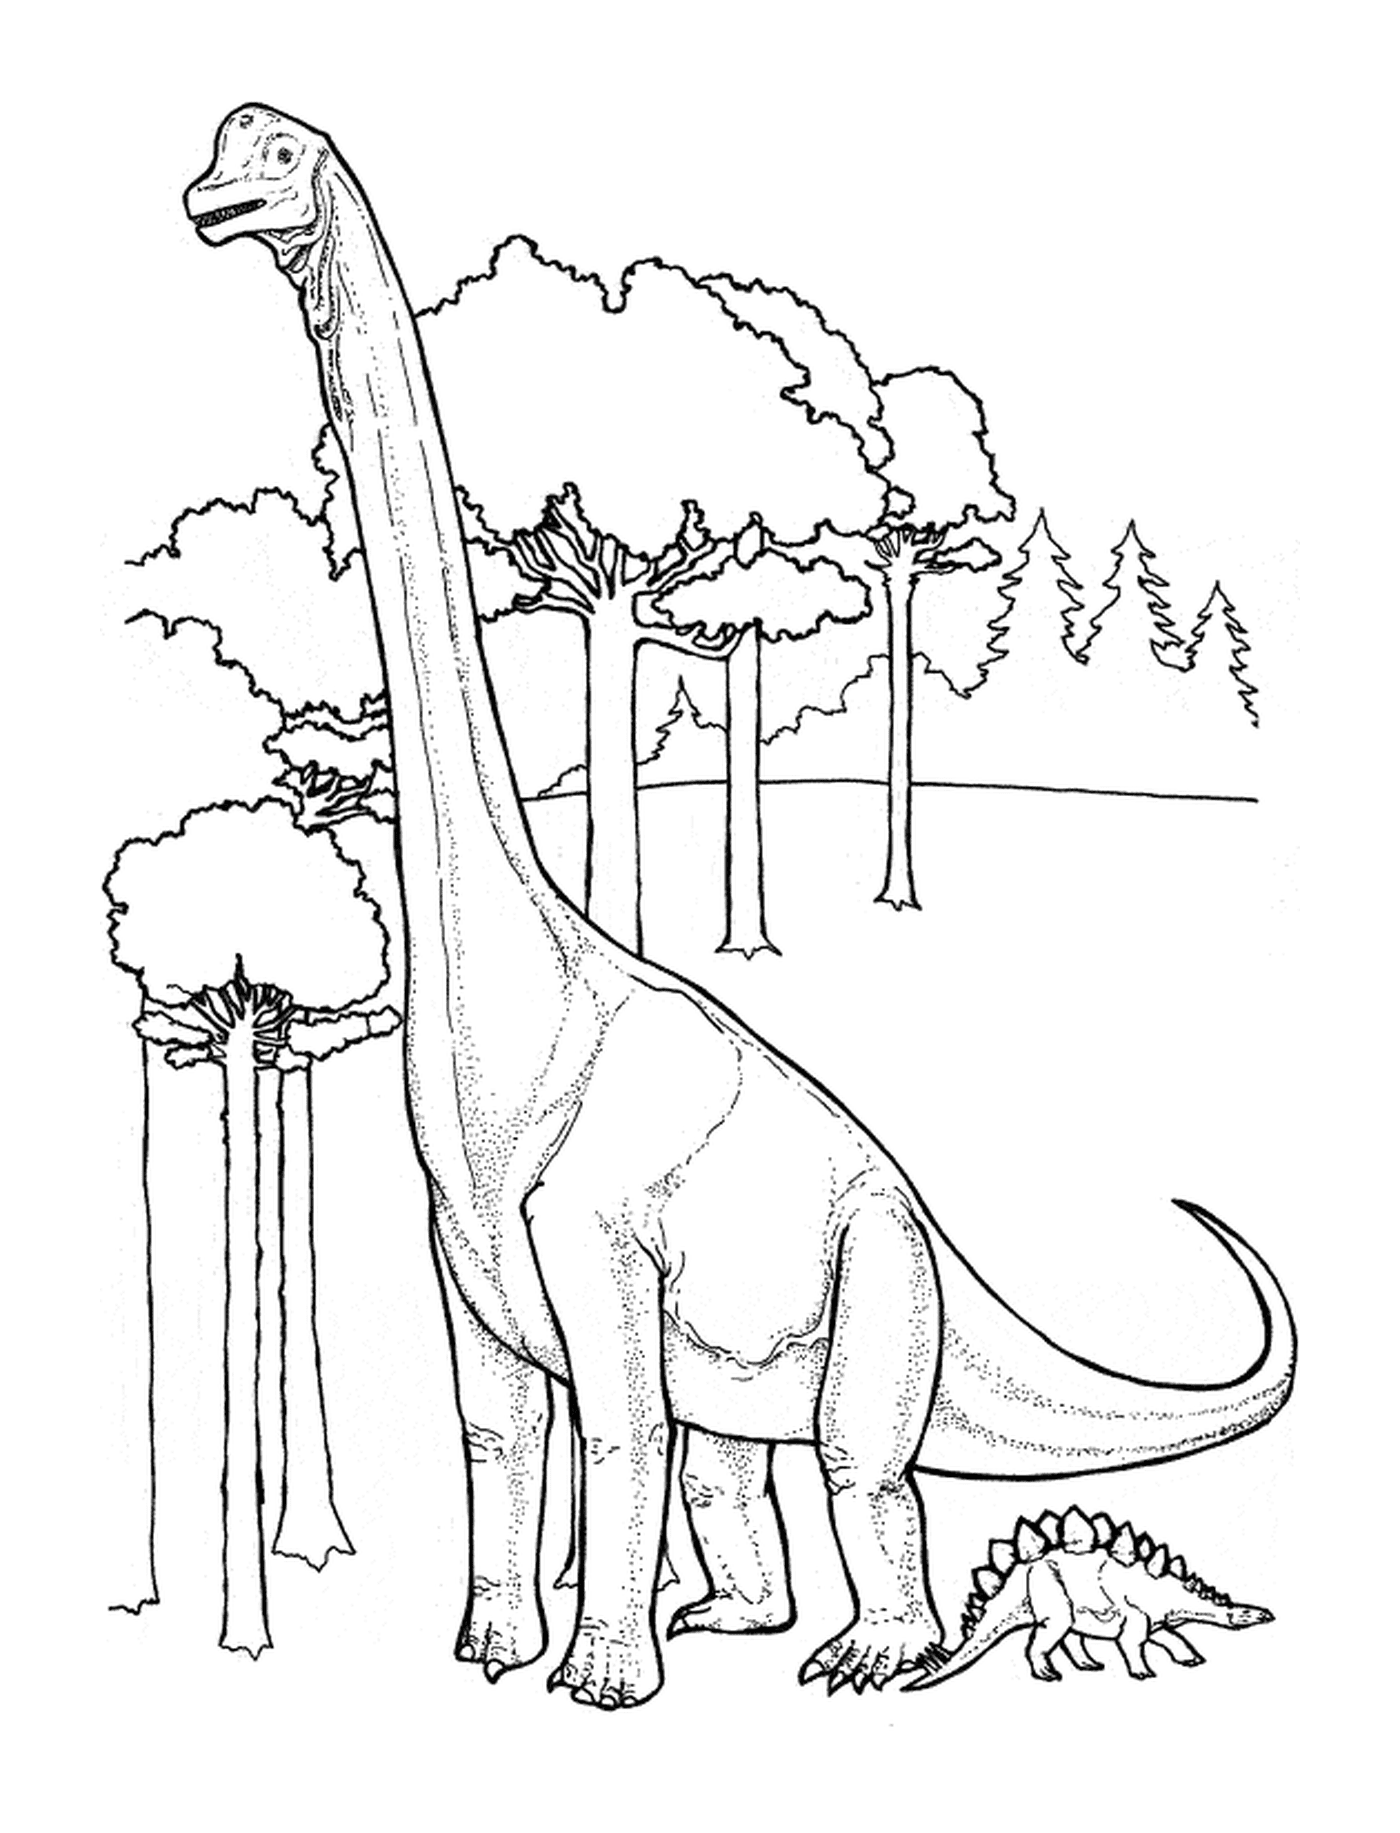   Dinosaure se tenant dans une forêt luxuriante 